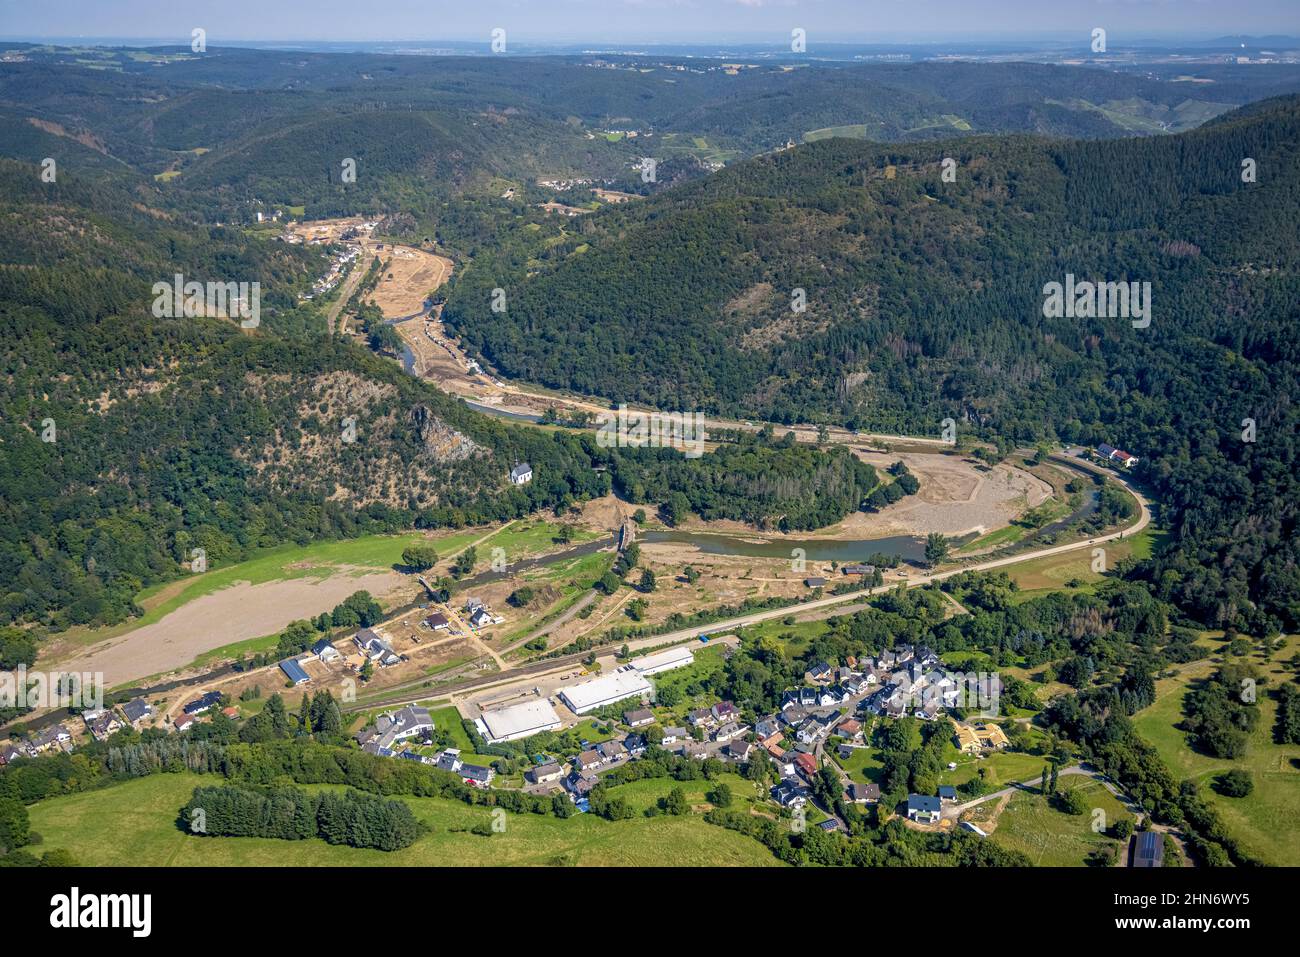 Luftbild, Überschwemmungsgebiet am Fluss Ahr im Ortsteil Pützfeld in Ahrbrück, Ahr-Hochwasser, Ahrtal, Rheinland-Pfalz, Allemagne, Ahrbrück, Ahrhoch Banque D'Images